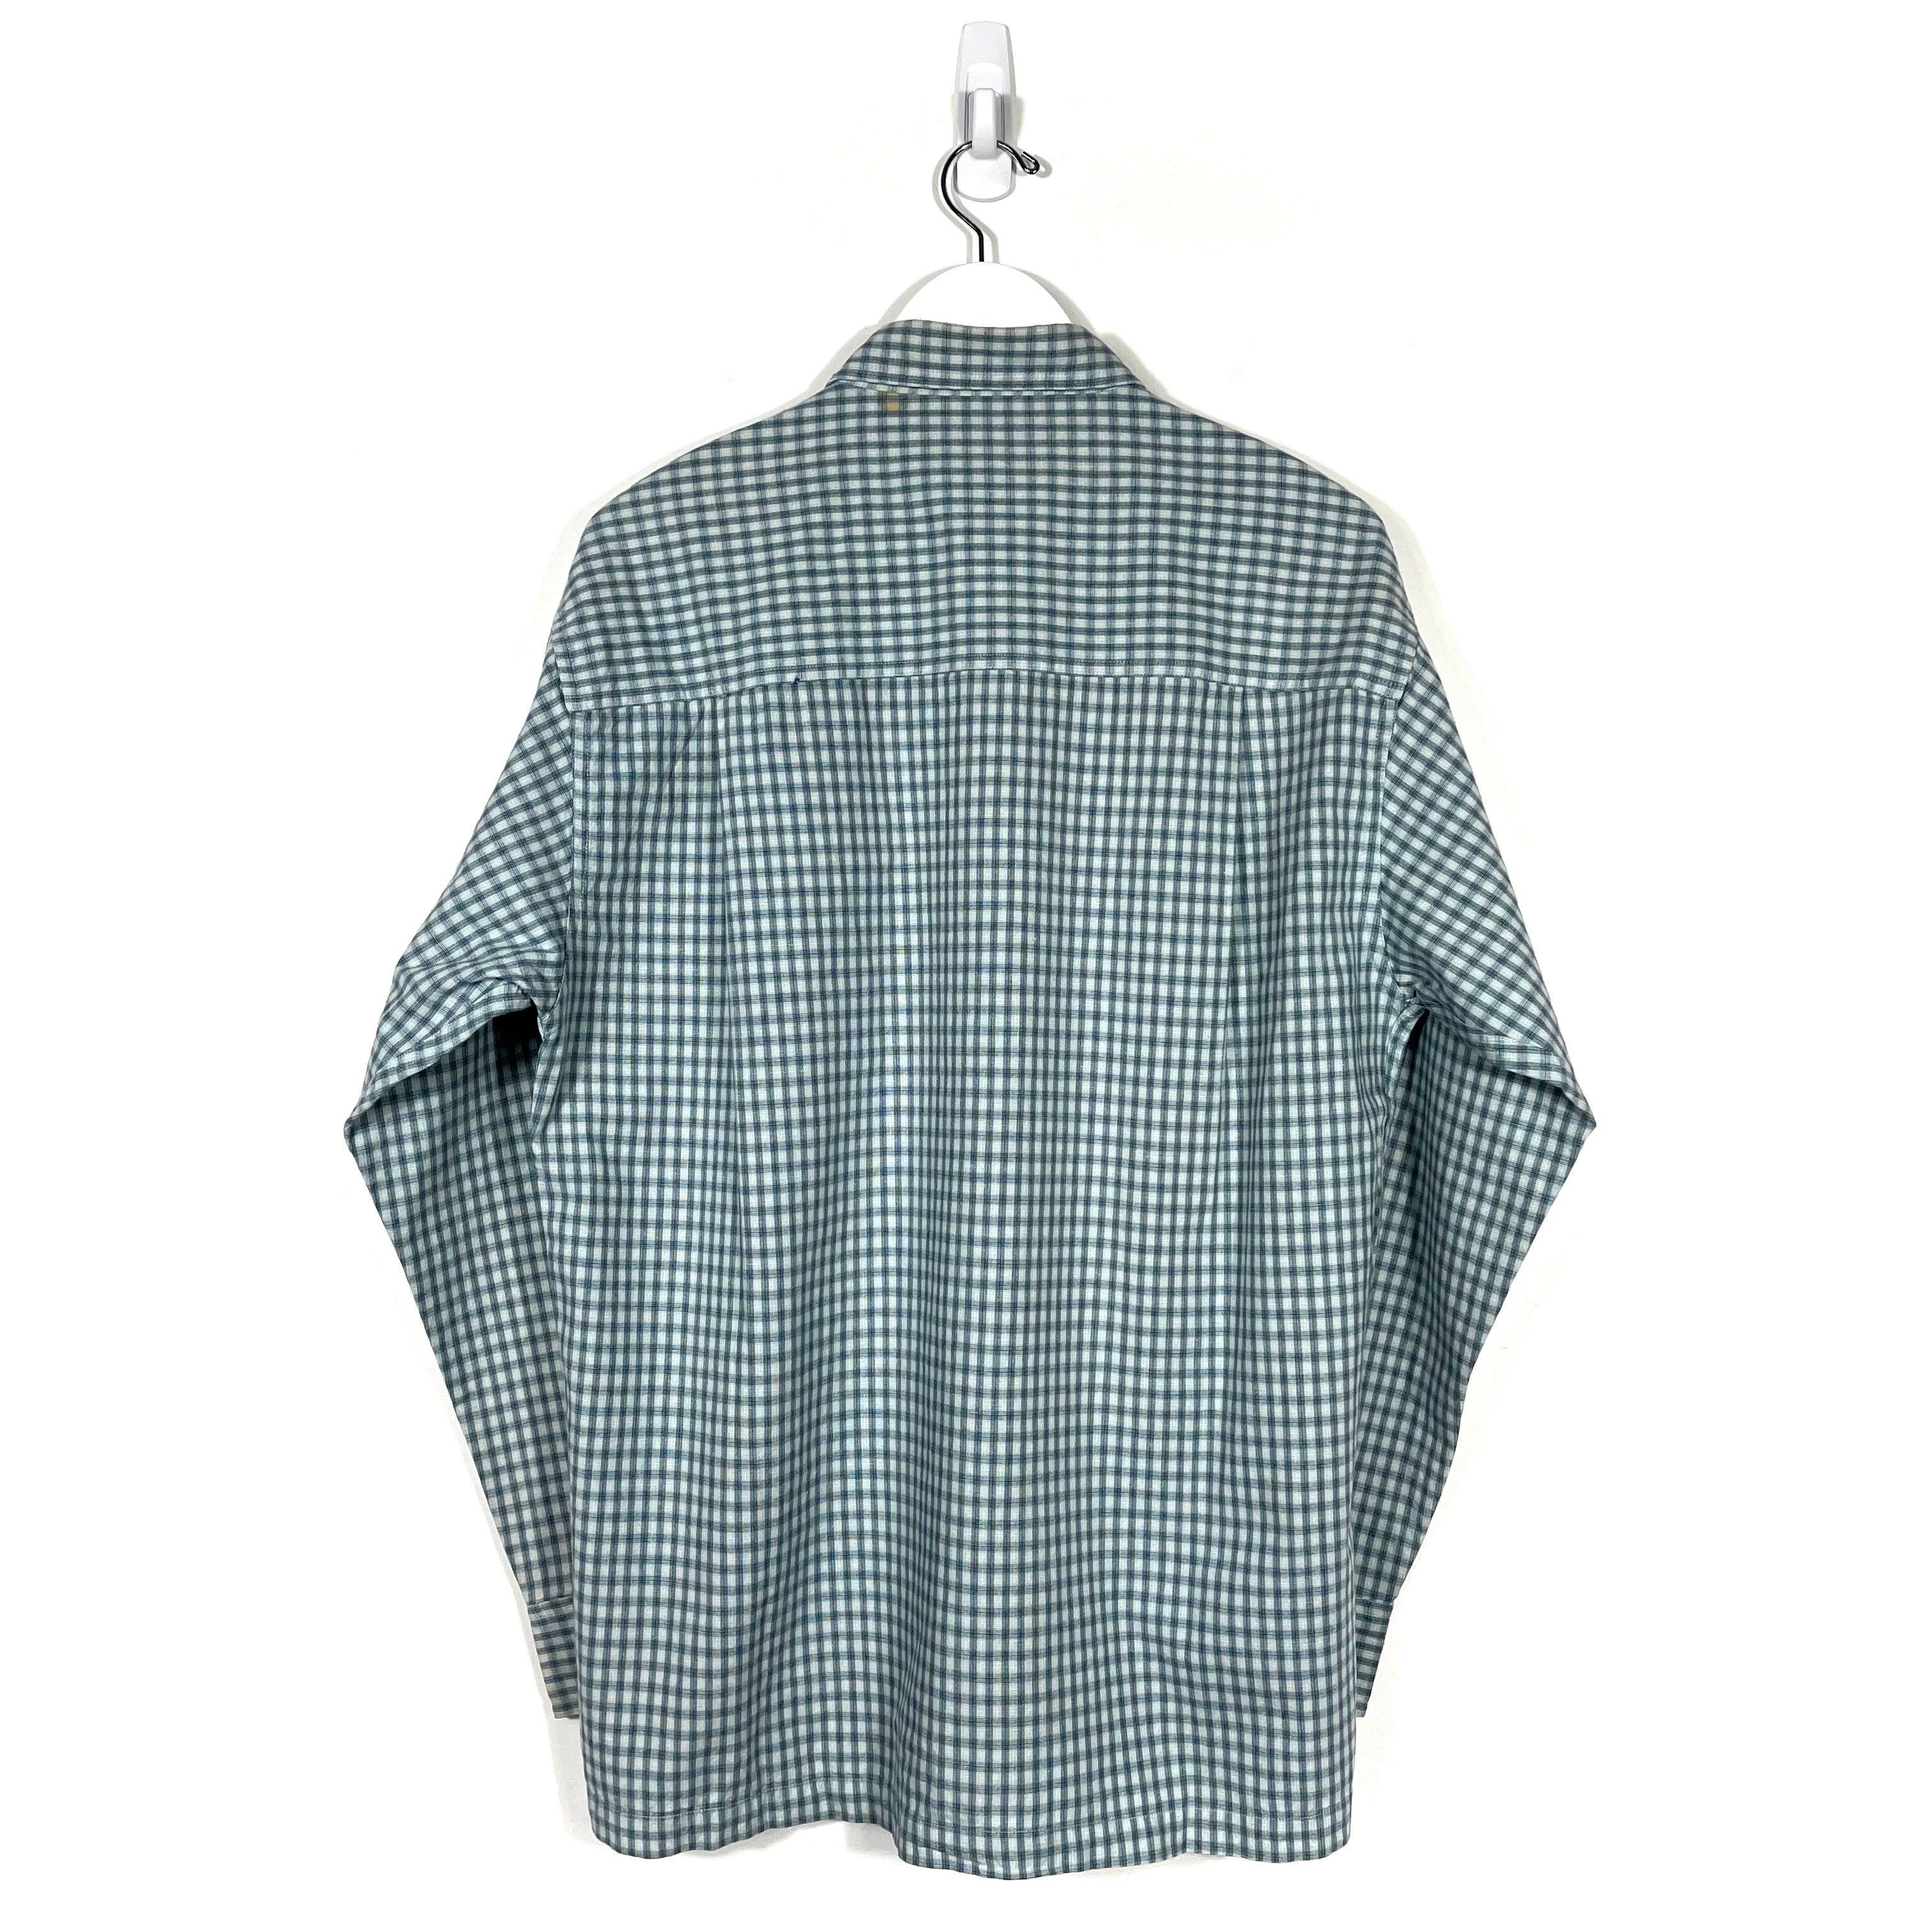 Vintage Chaps Ralph Lauren Button-Down Plaid Shirt - Men's Medium